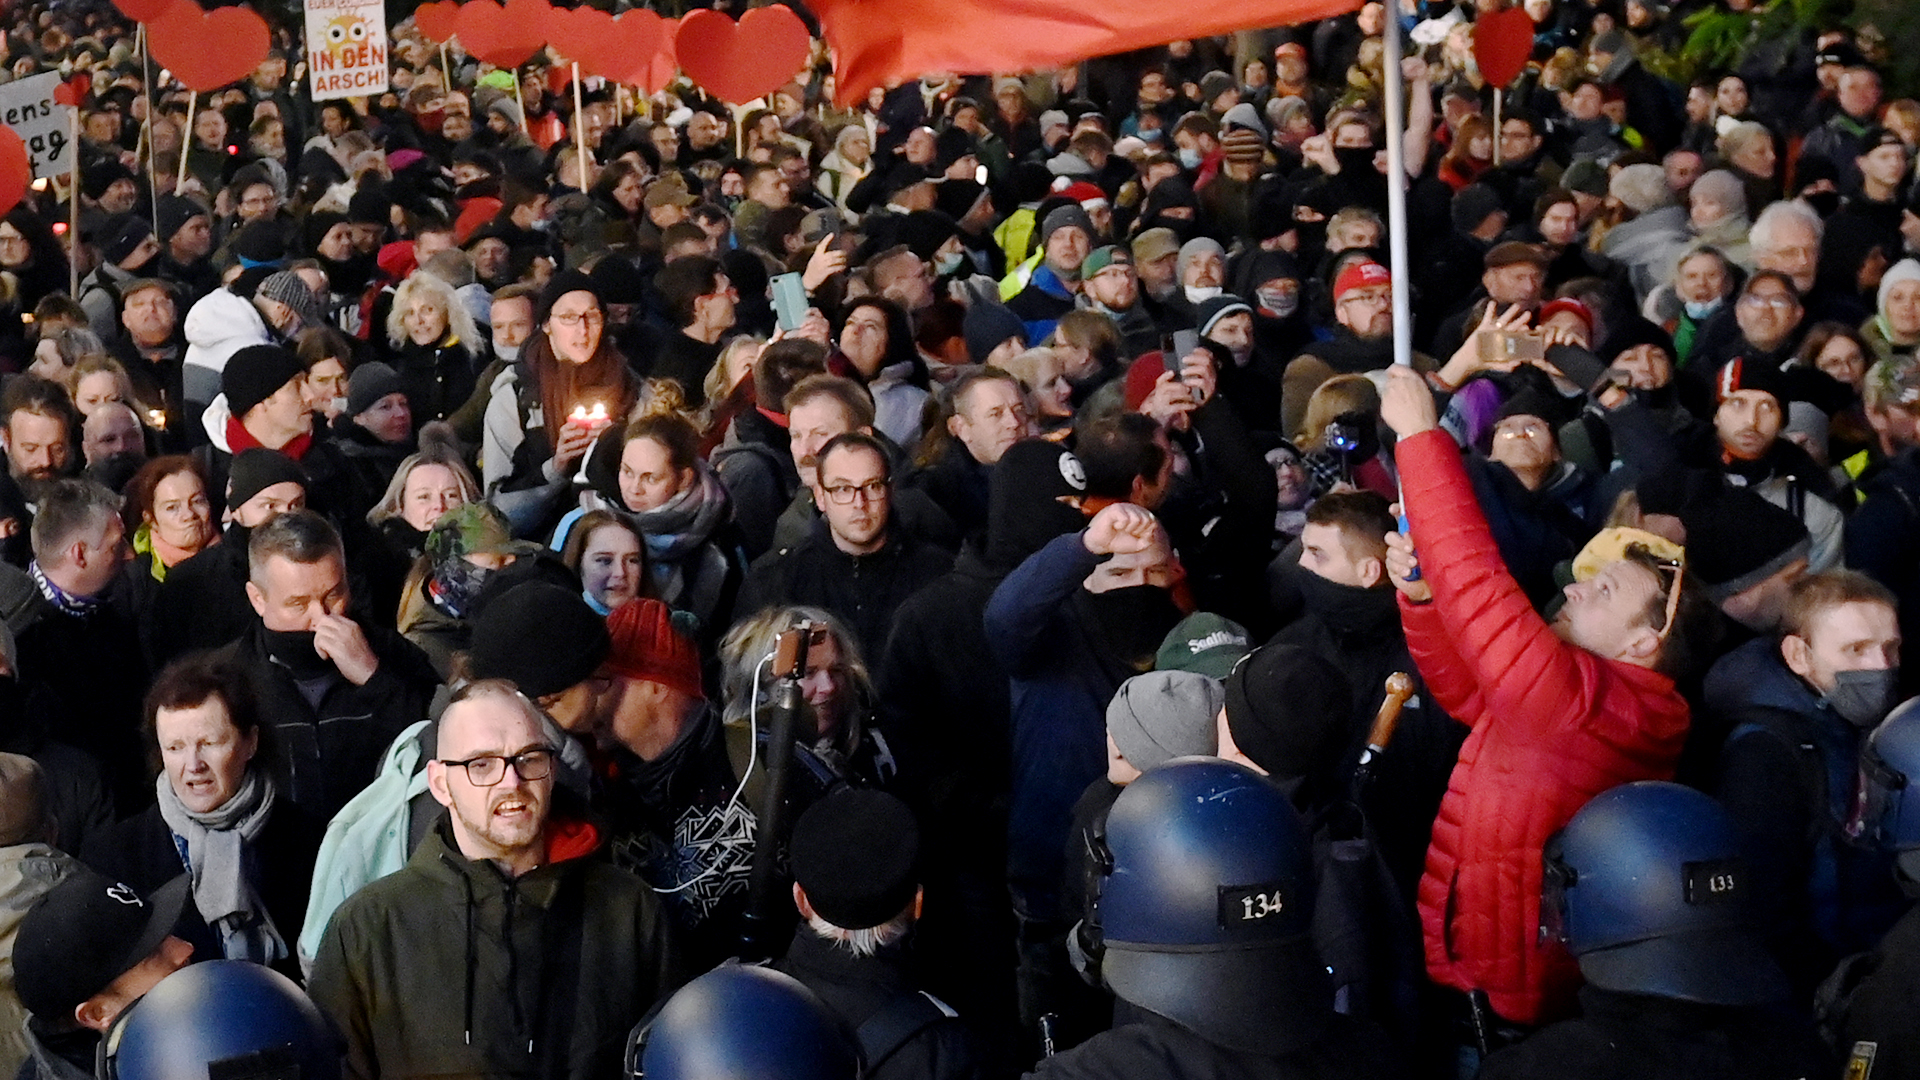 Polizei sperrt den Weg von Gegnern der Corona-Politik im Zentrum von Leipzig | dpa